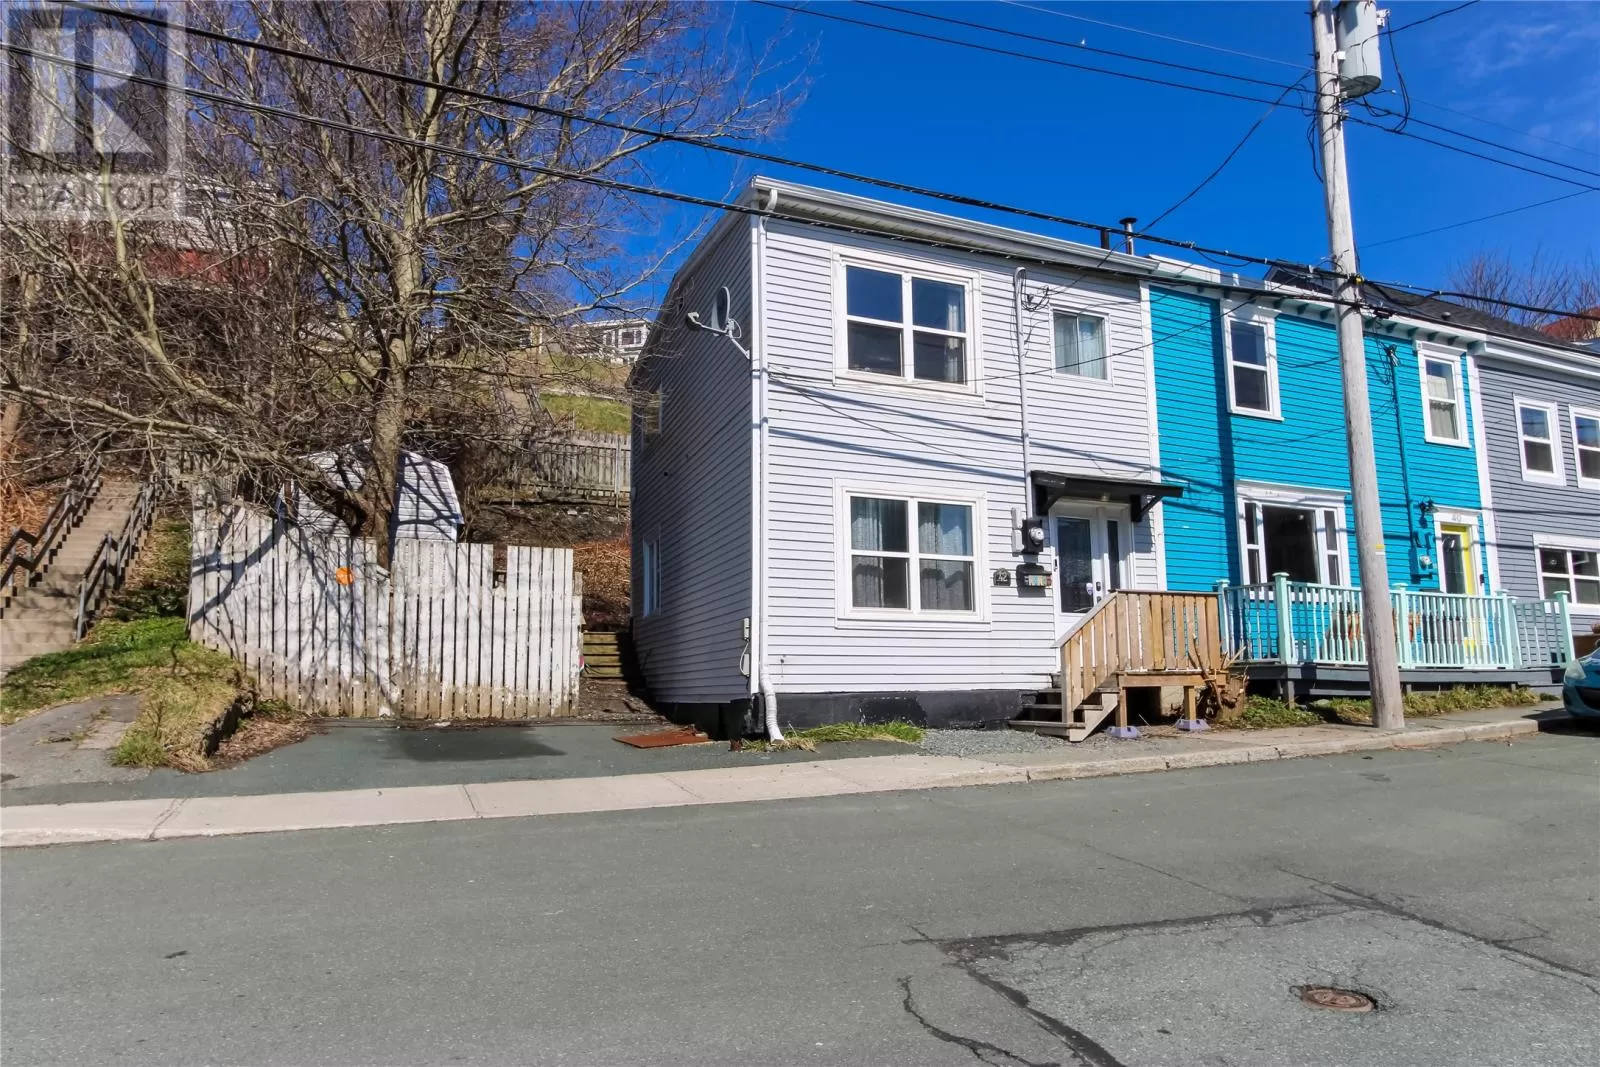 House for rent: 42 Livingstone Street, St. Johns, Newfoundland & Labrador A1C 1V6